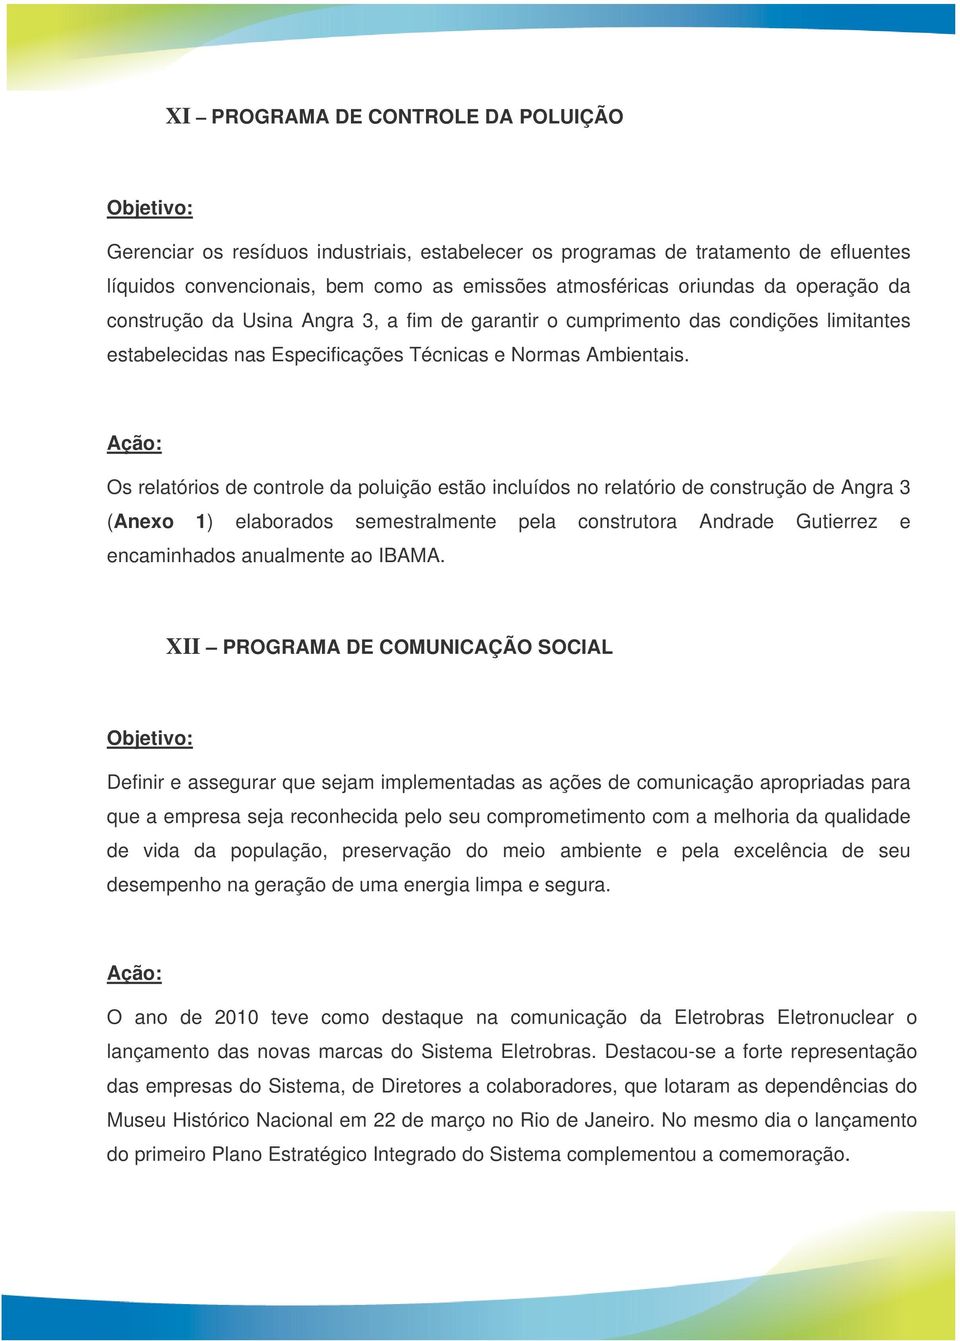 Os relatórios de controle da poluição estão incluídos no relatório de construção de Angra 3 (Anexo 1) elaborados semestralmente pela construtora Andrade Gutierrez e encaminhados anualmente ao IBAMA.